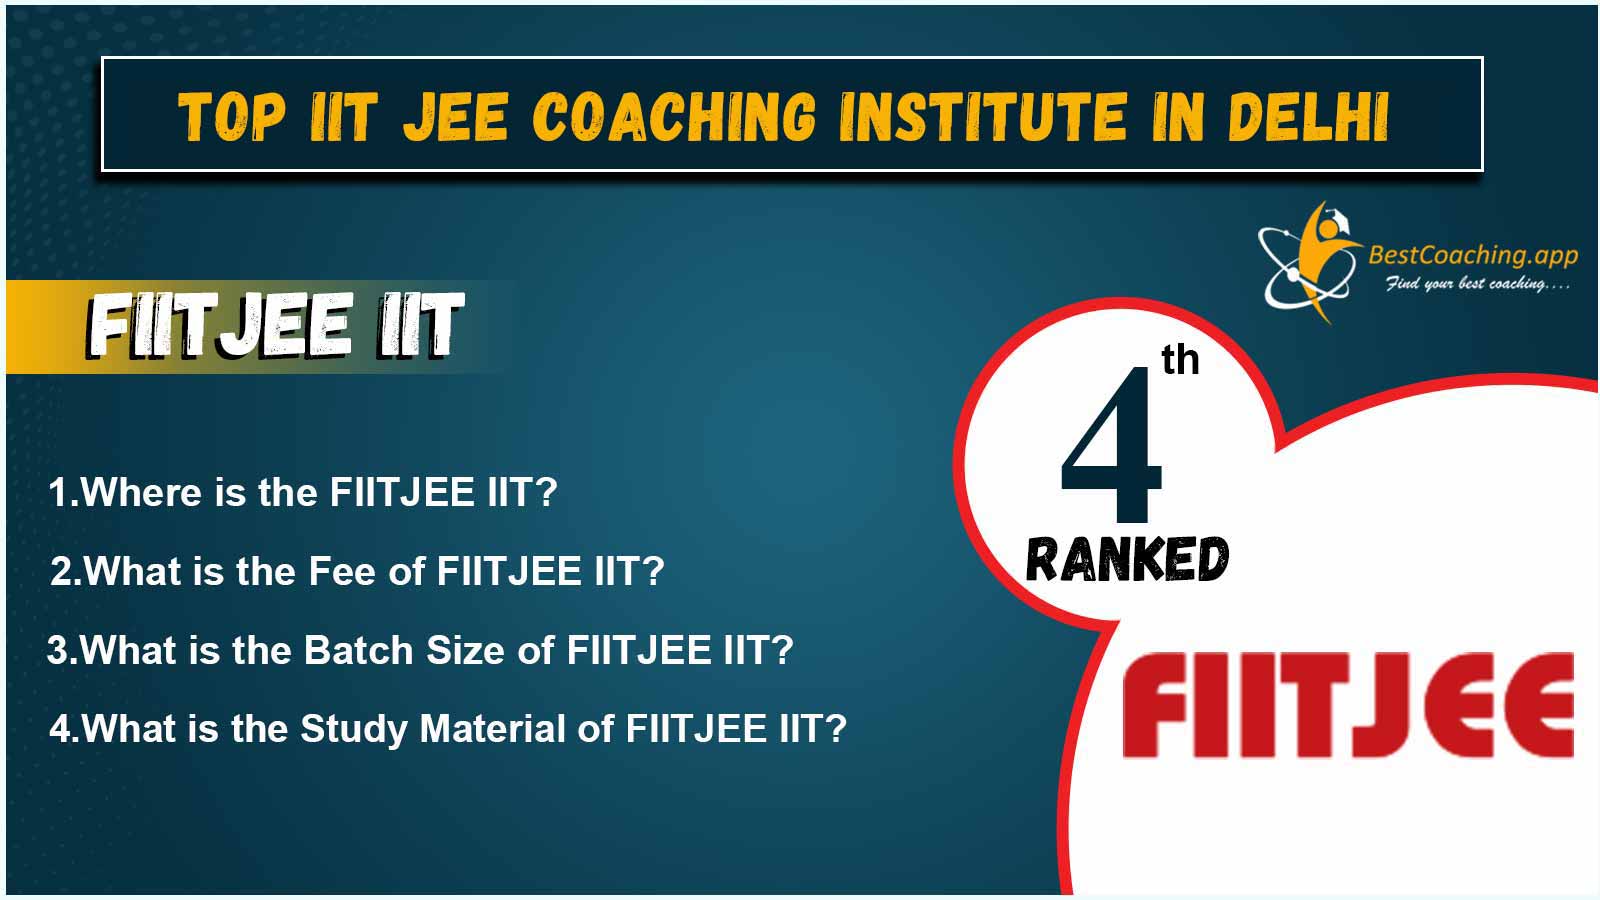 Top IIT JEE Coaching Centers In Delhi